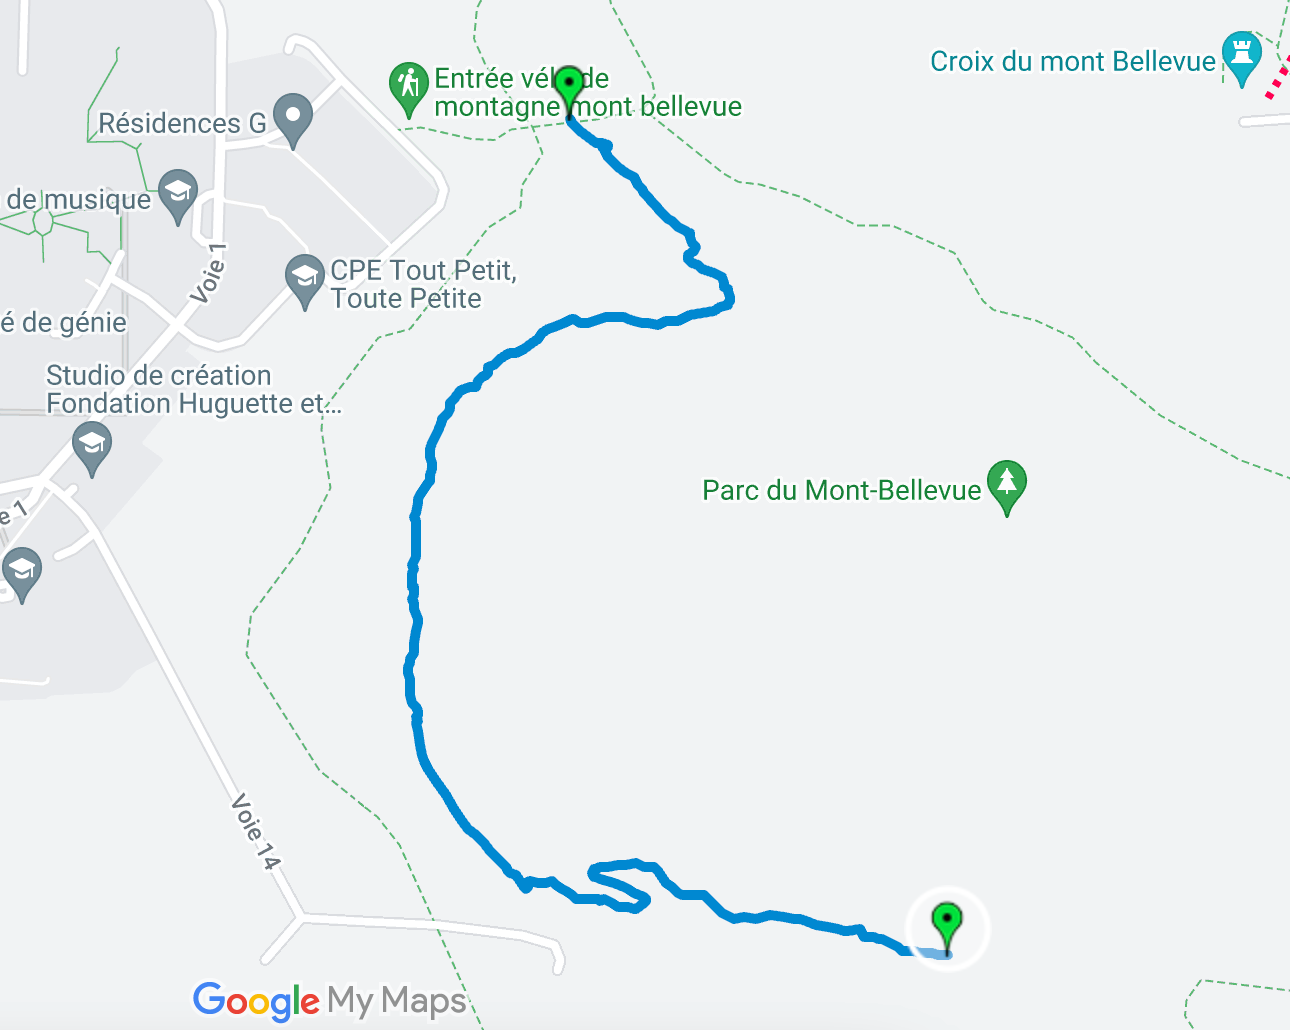 Nouveaux sentiers rustiques au Mont-Bellevue (Cliquez pour voir le sentier)